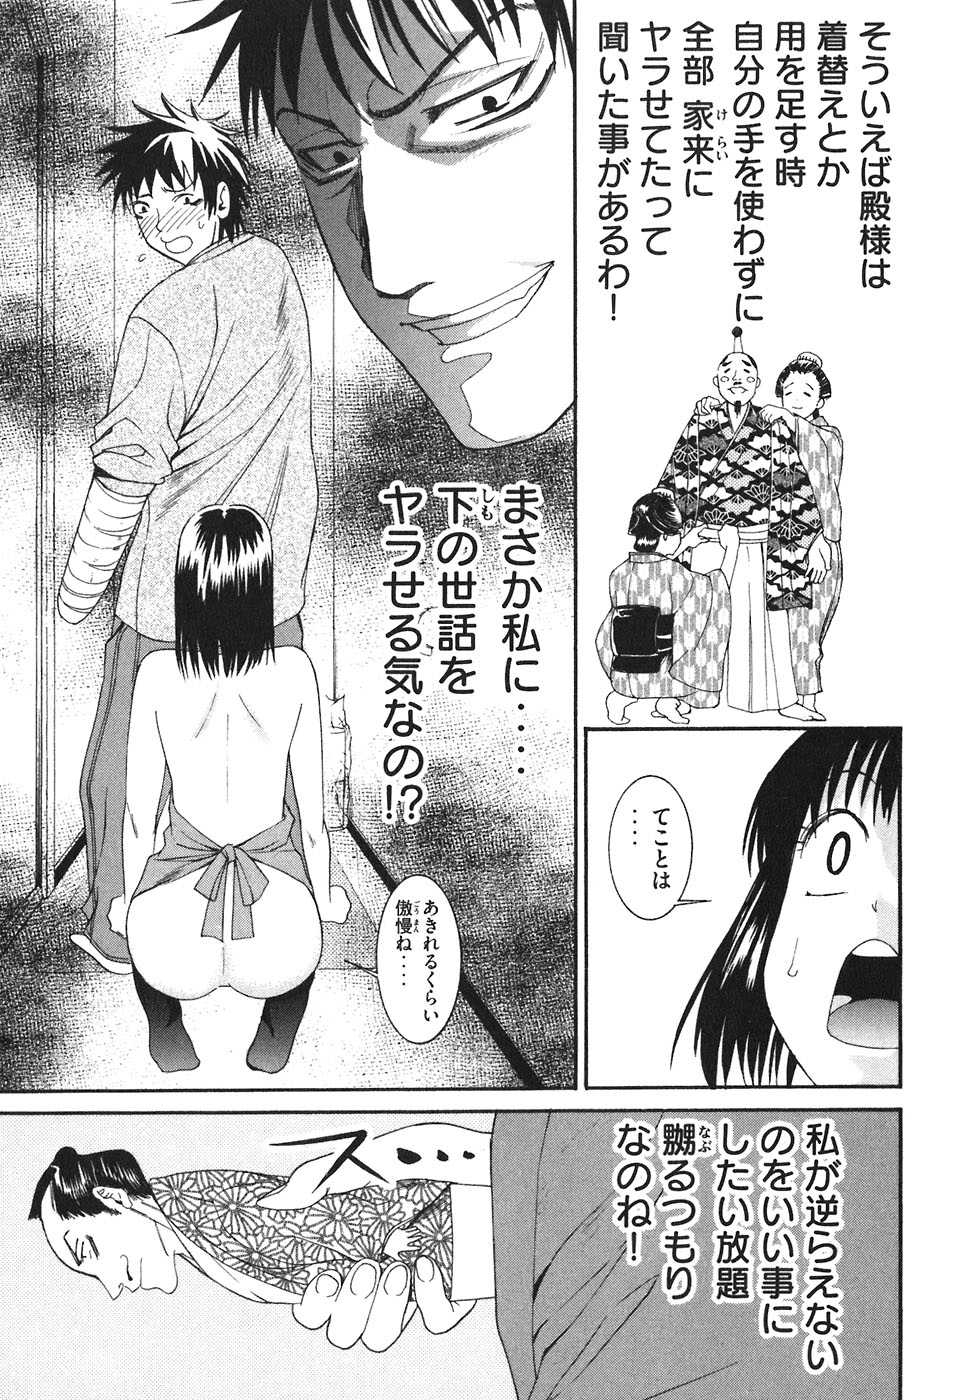 [Torikawa Sora] Bousou Shojo Vol. 3 [酉川 宇宙] 暴想処女 3